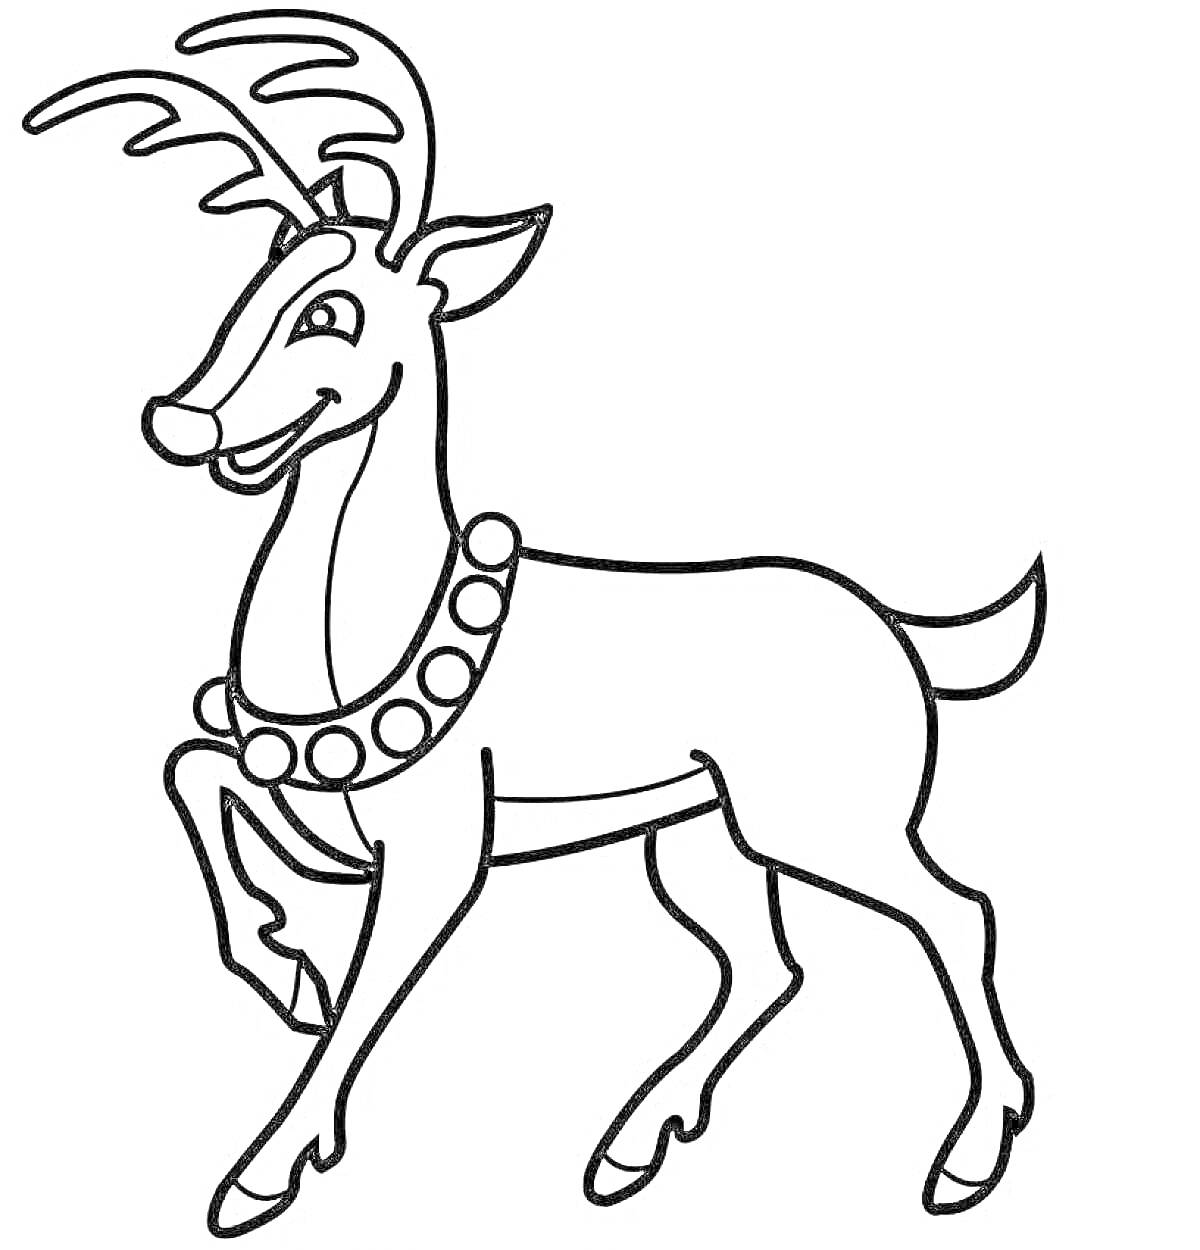 Раскраска северный олень с рогами и ожерельем-поводком